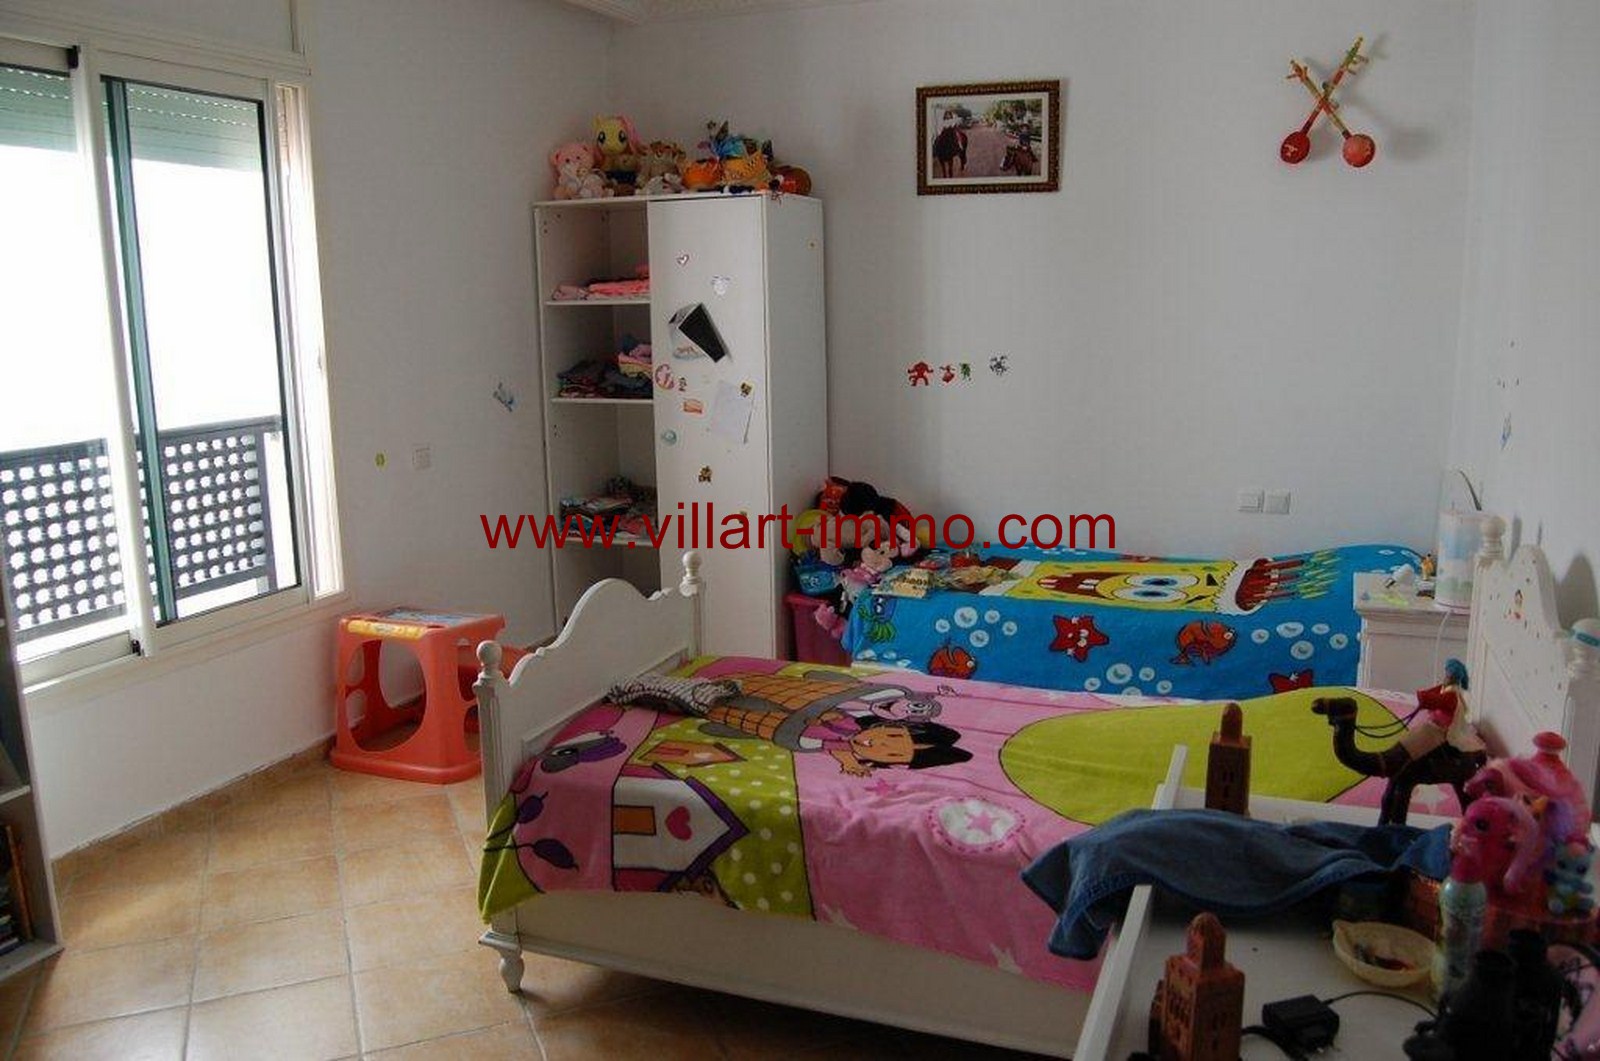 6-For-Sale-Villa-Tangier-Malabata-Bedroom 2-VV354-Villart Immo